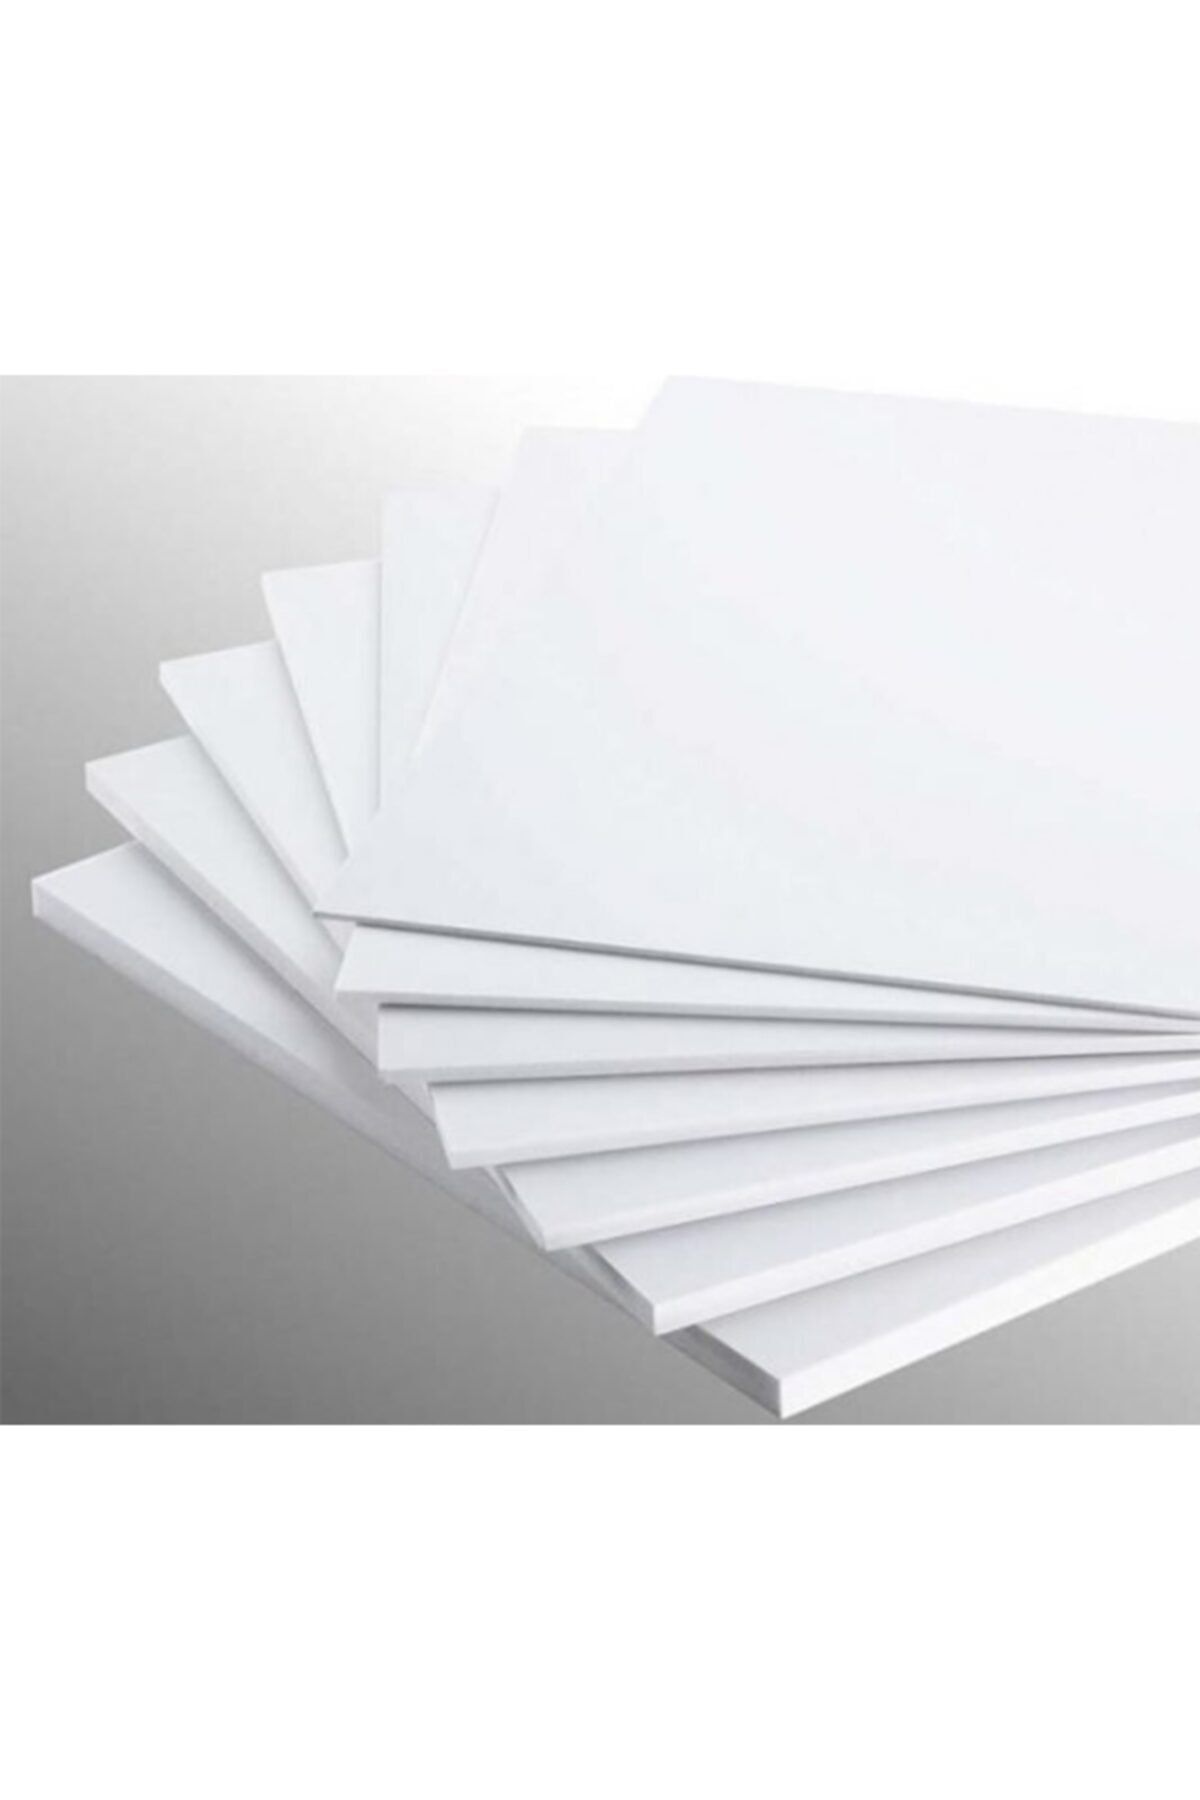 Bigpoint Köpüklü Maket Kartonu 5 Mm 50x70 Beyaz 5'li Paket